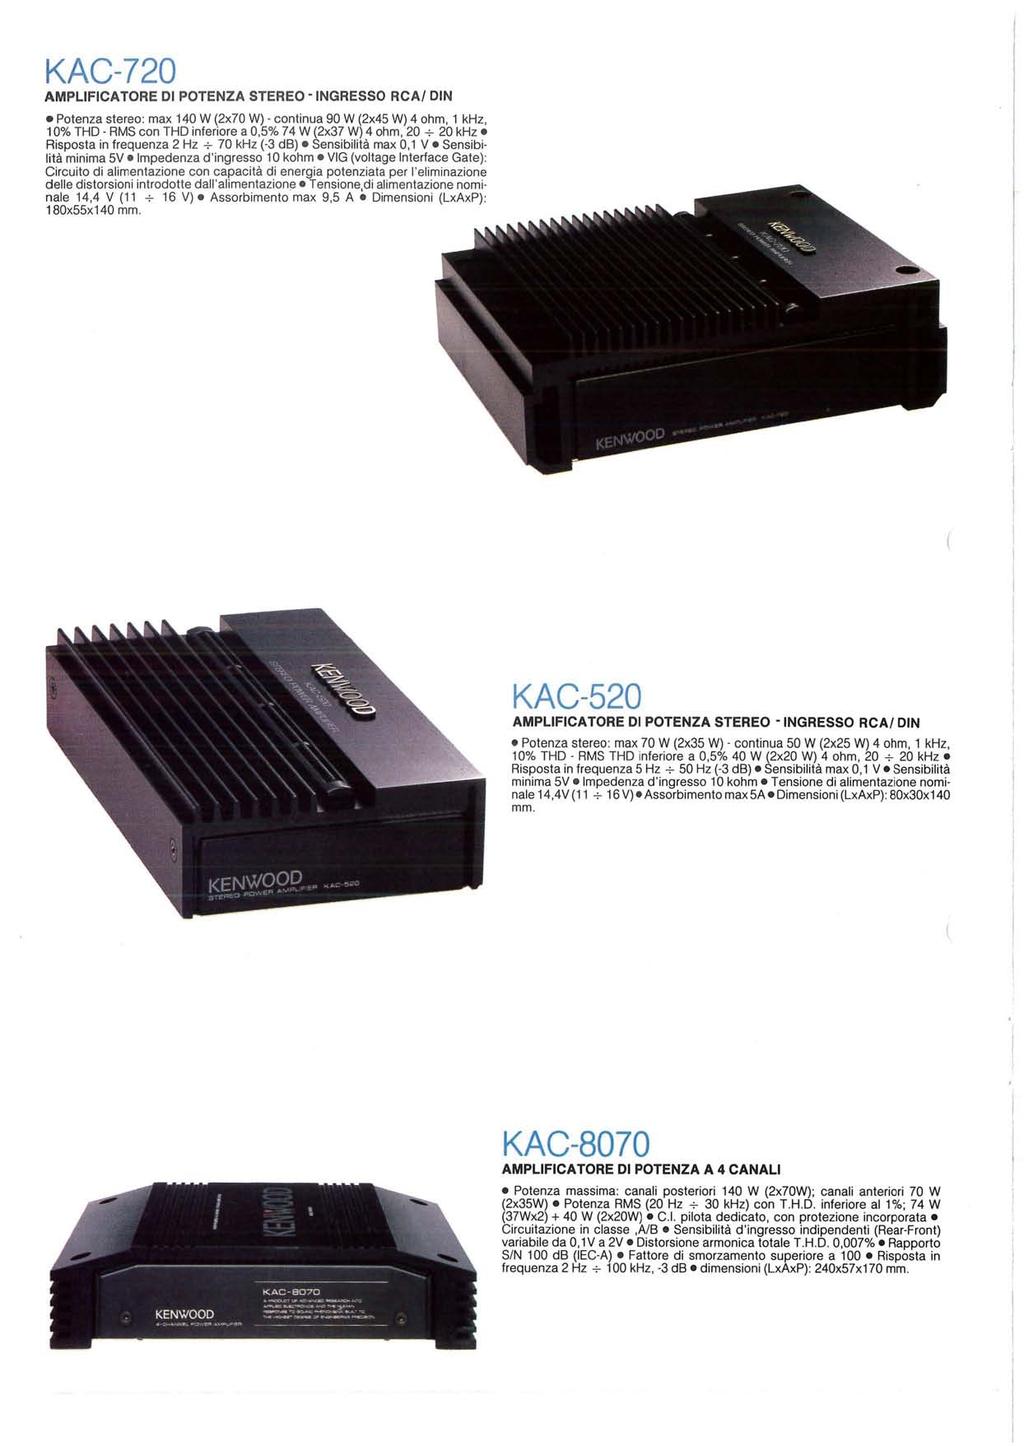 KAC720 AMPLIFICATORE DI POTENZA STEREO INGRESSO RCA/ DIN Potenza stereo: max 140 W (2x70 W) continua 90 W (2x45 W) 4 ohm, 1 khz, 10% THD RMS con THD inferiore a 0,5% 74 W (2x37 W) 4 ohm, 20 ~ 20 khz